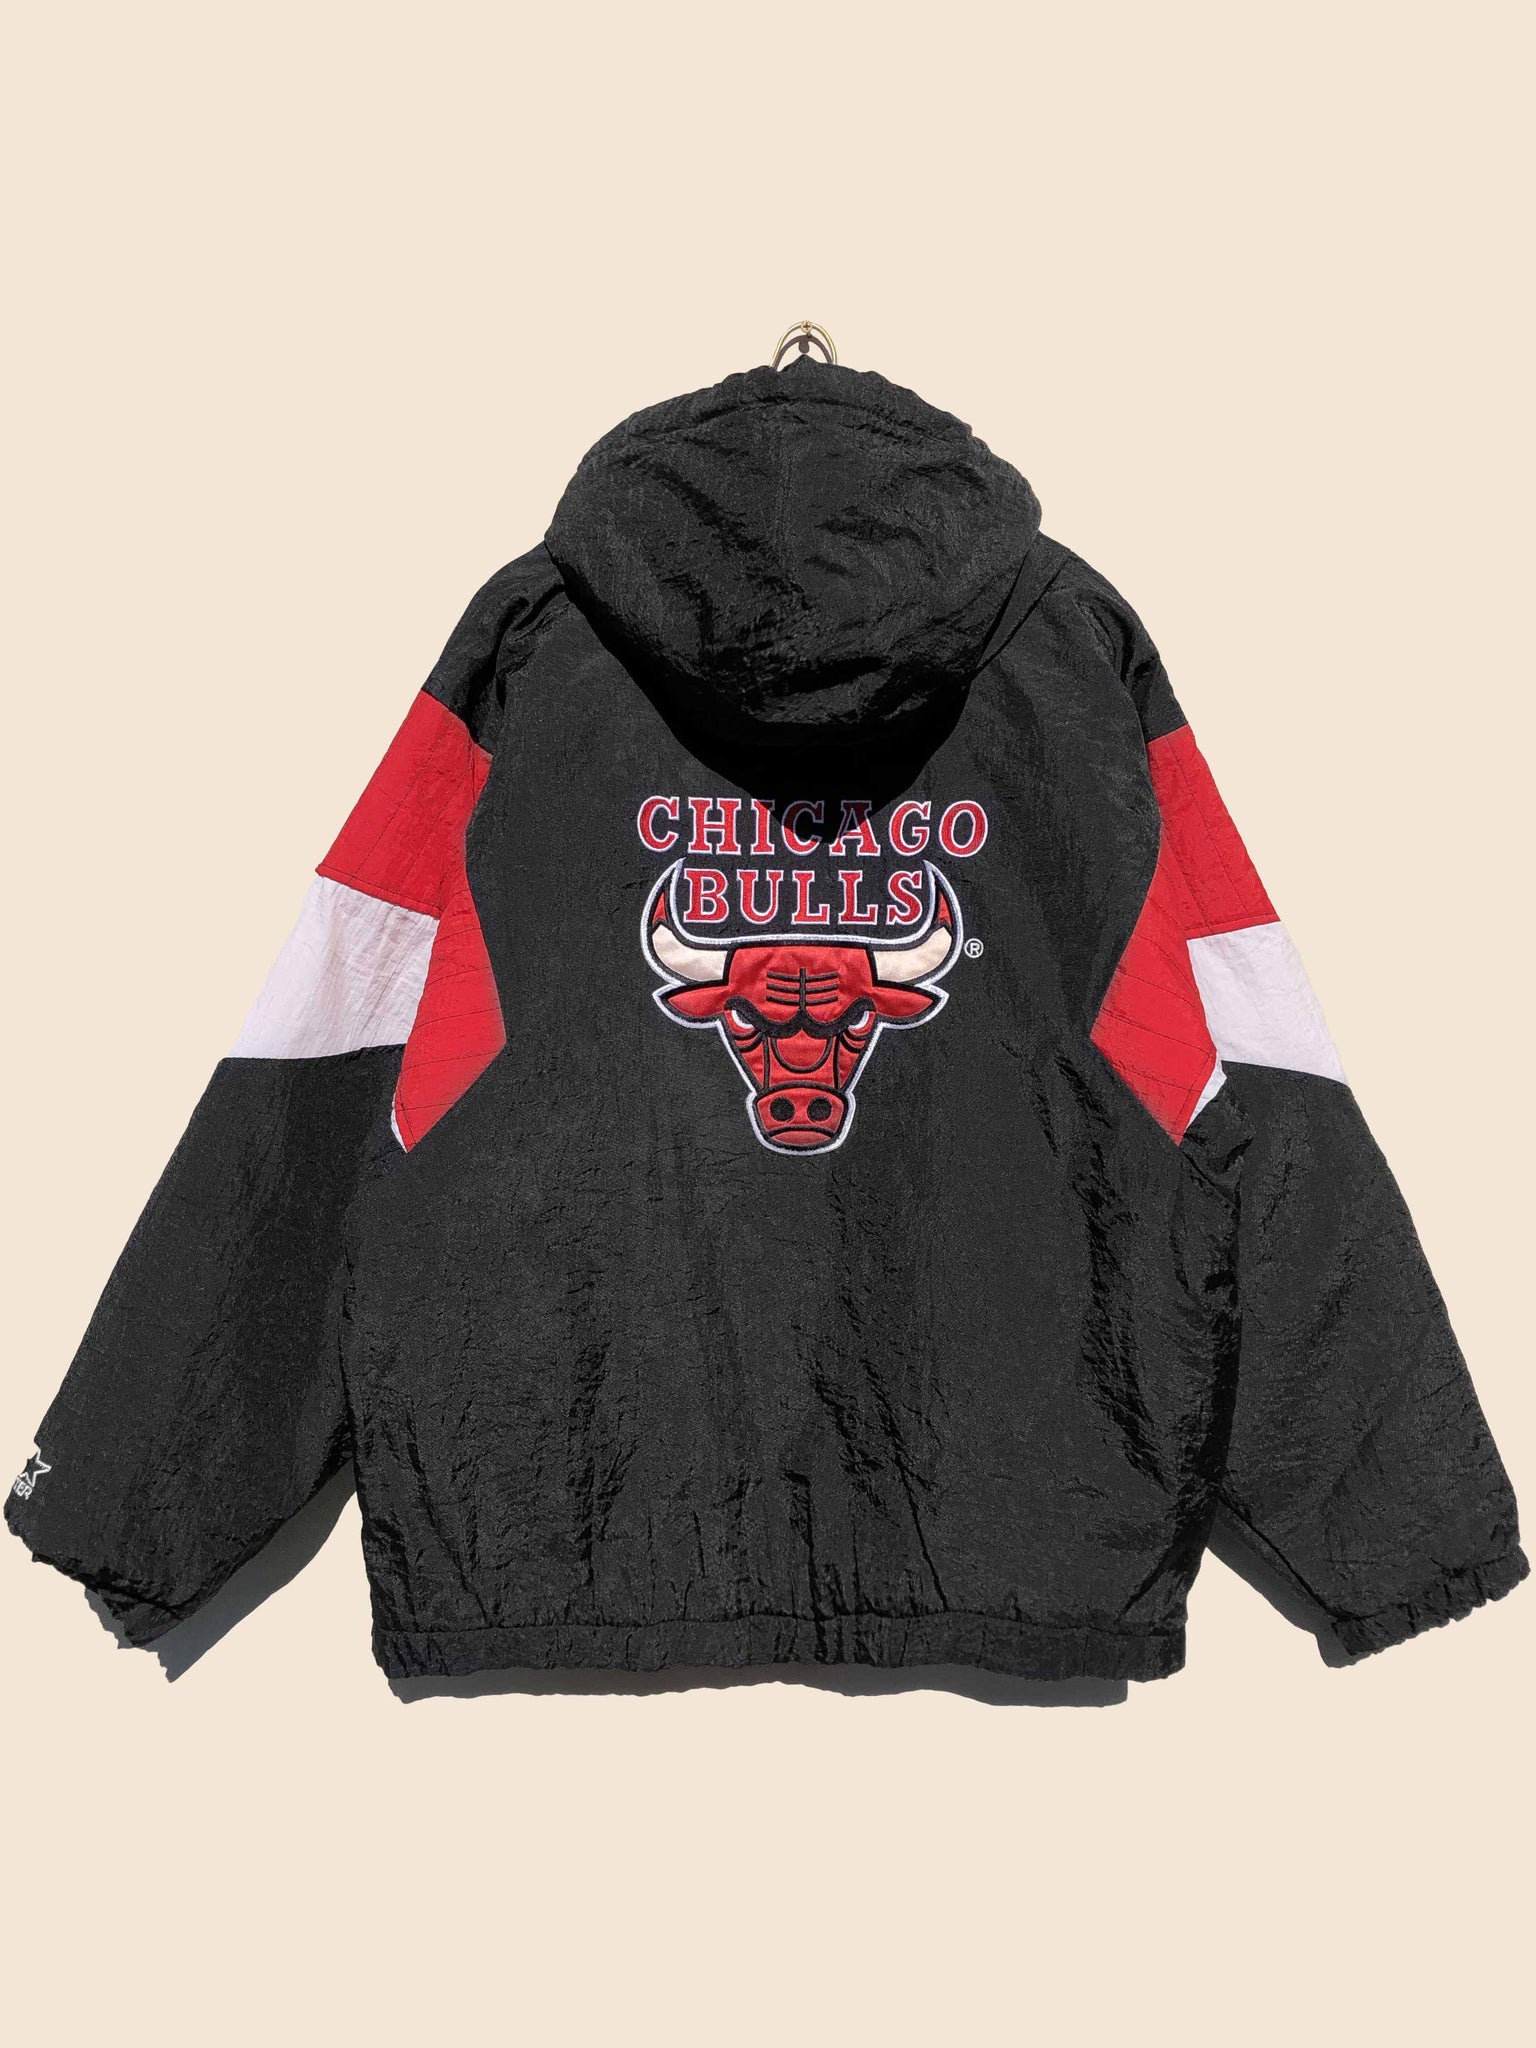 Chicago Bulls Starter Jacket 